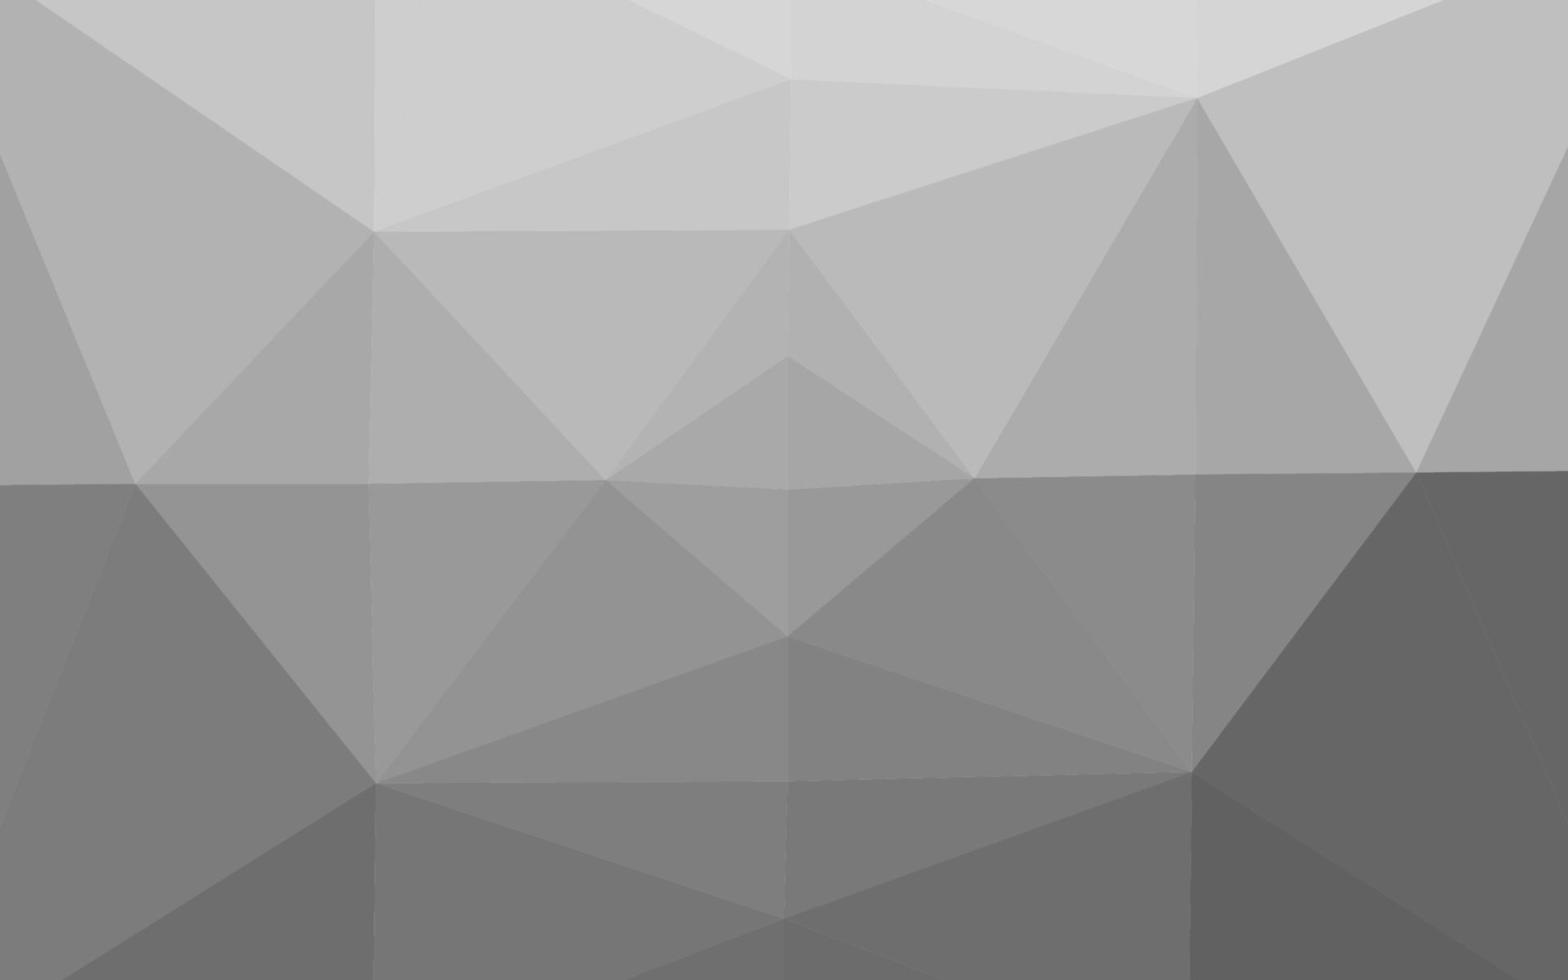 Light Silver, Gray vector abstract polygonal cover.